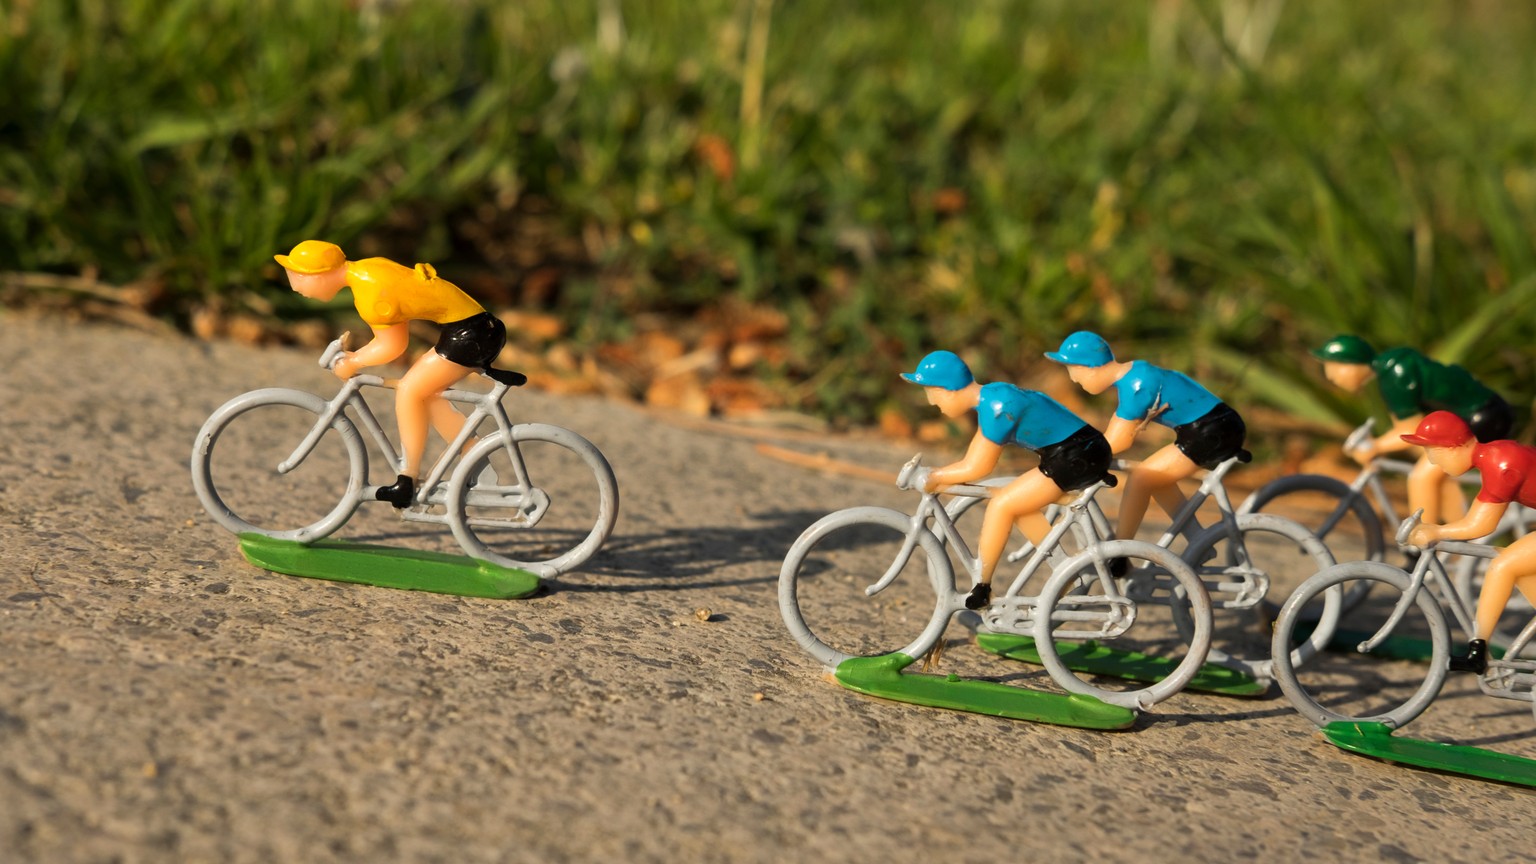 Gelb für den Leader: An der Tour de France erkennt jeder den Führenden.